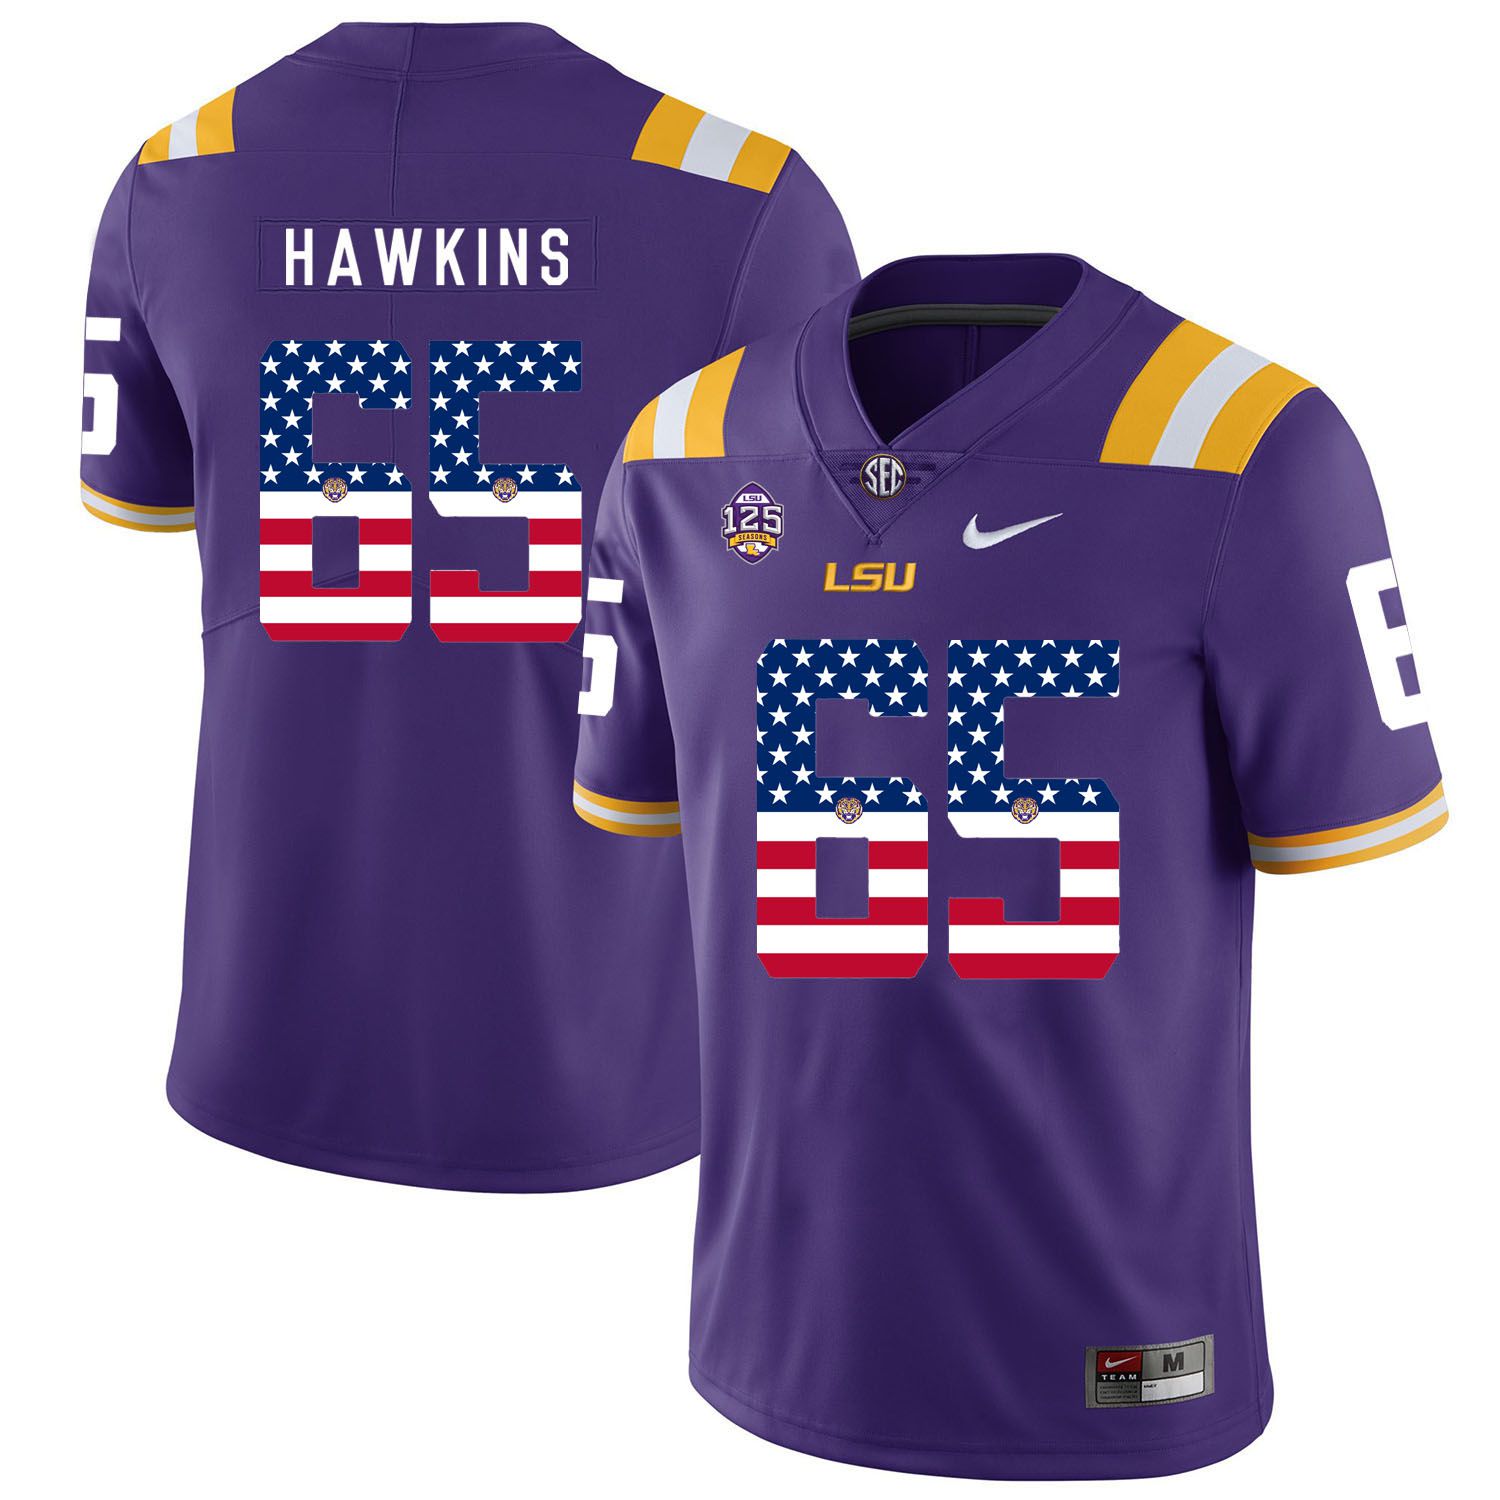 Men LSU Tigers #65 Hawkins Purple Flag Customized NCAA Jerseys->customized ncaa jersey->Custom Jersey